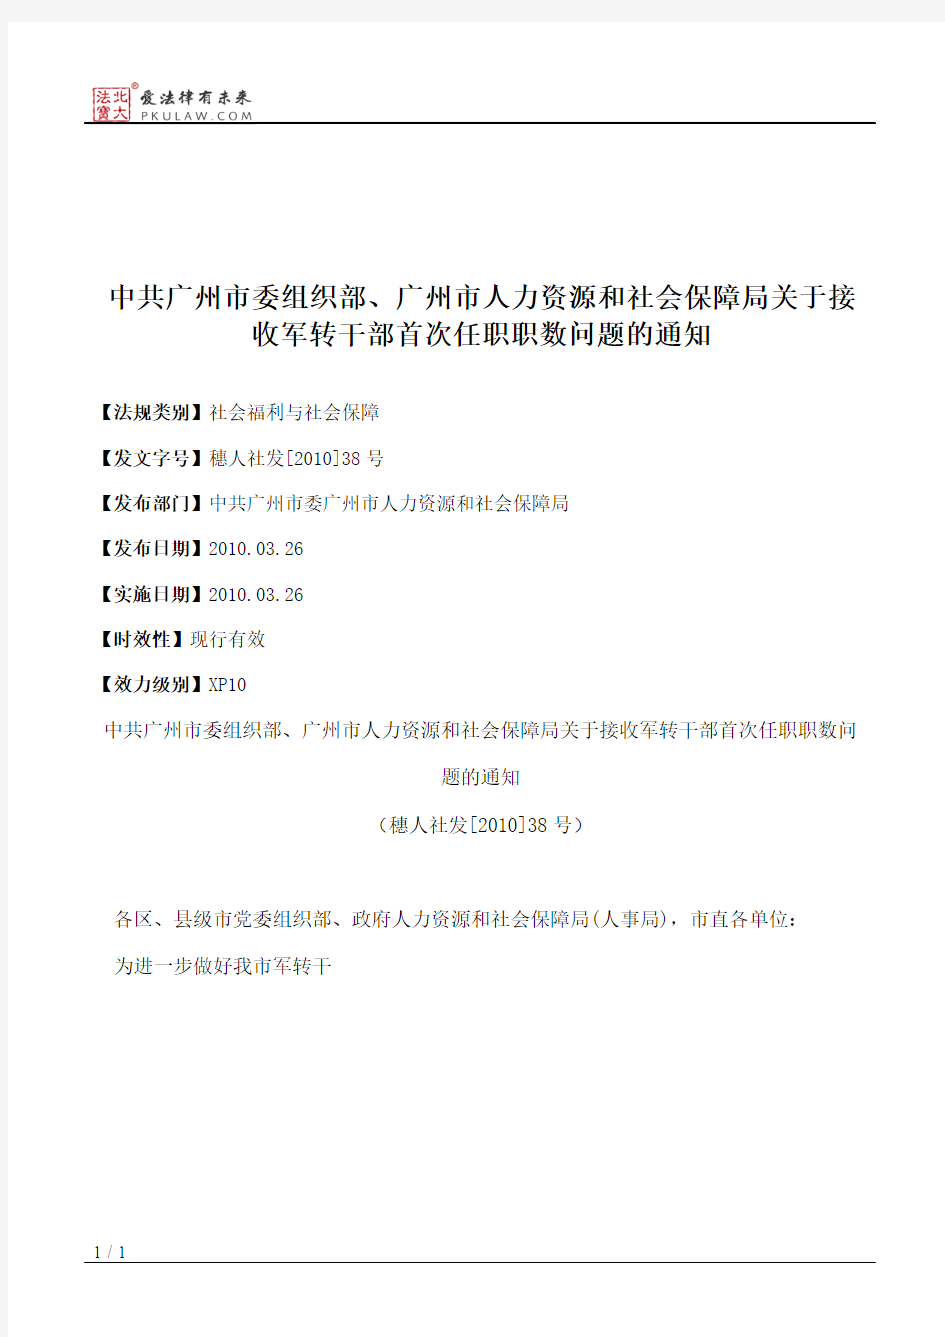 中共广州市委组织部、广州市人力资源和社会保障局关于接收军转干